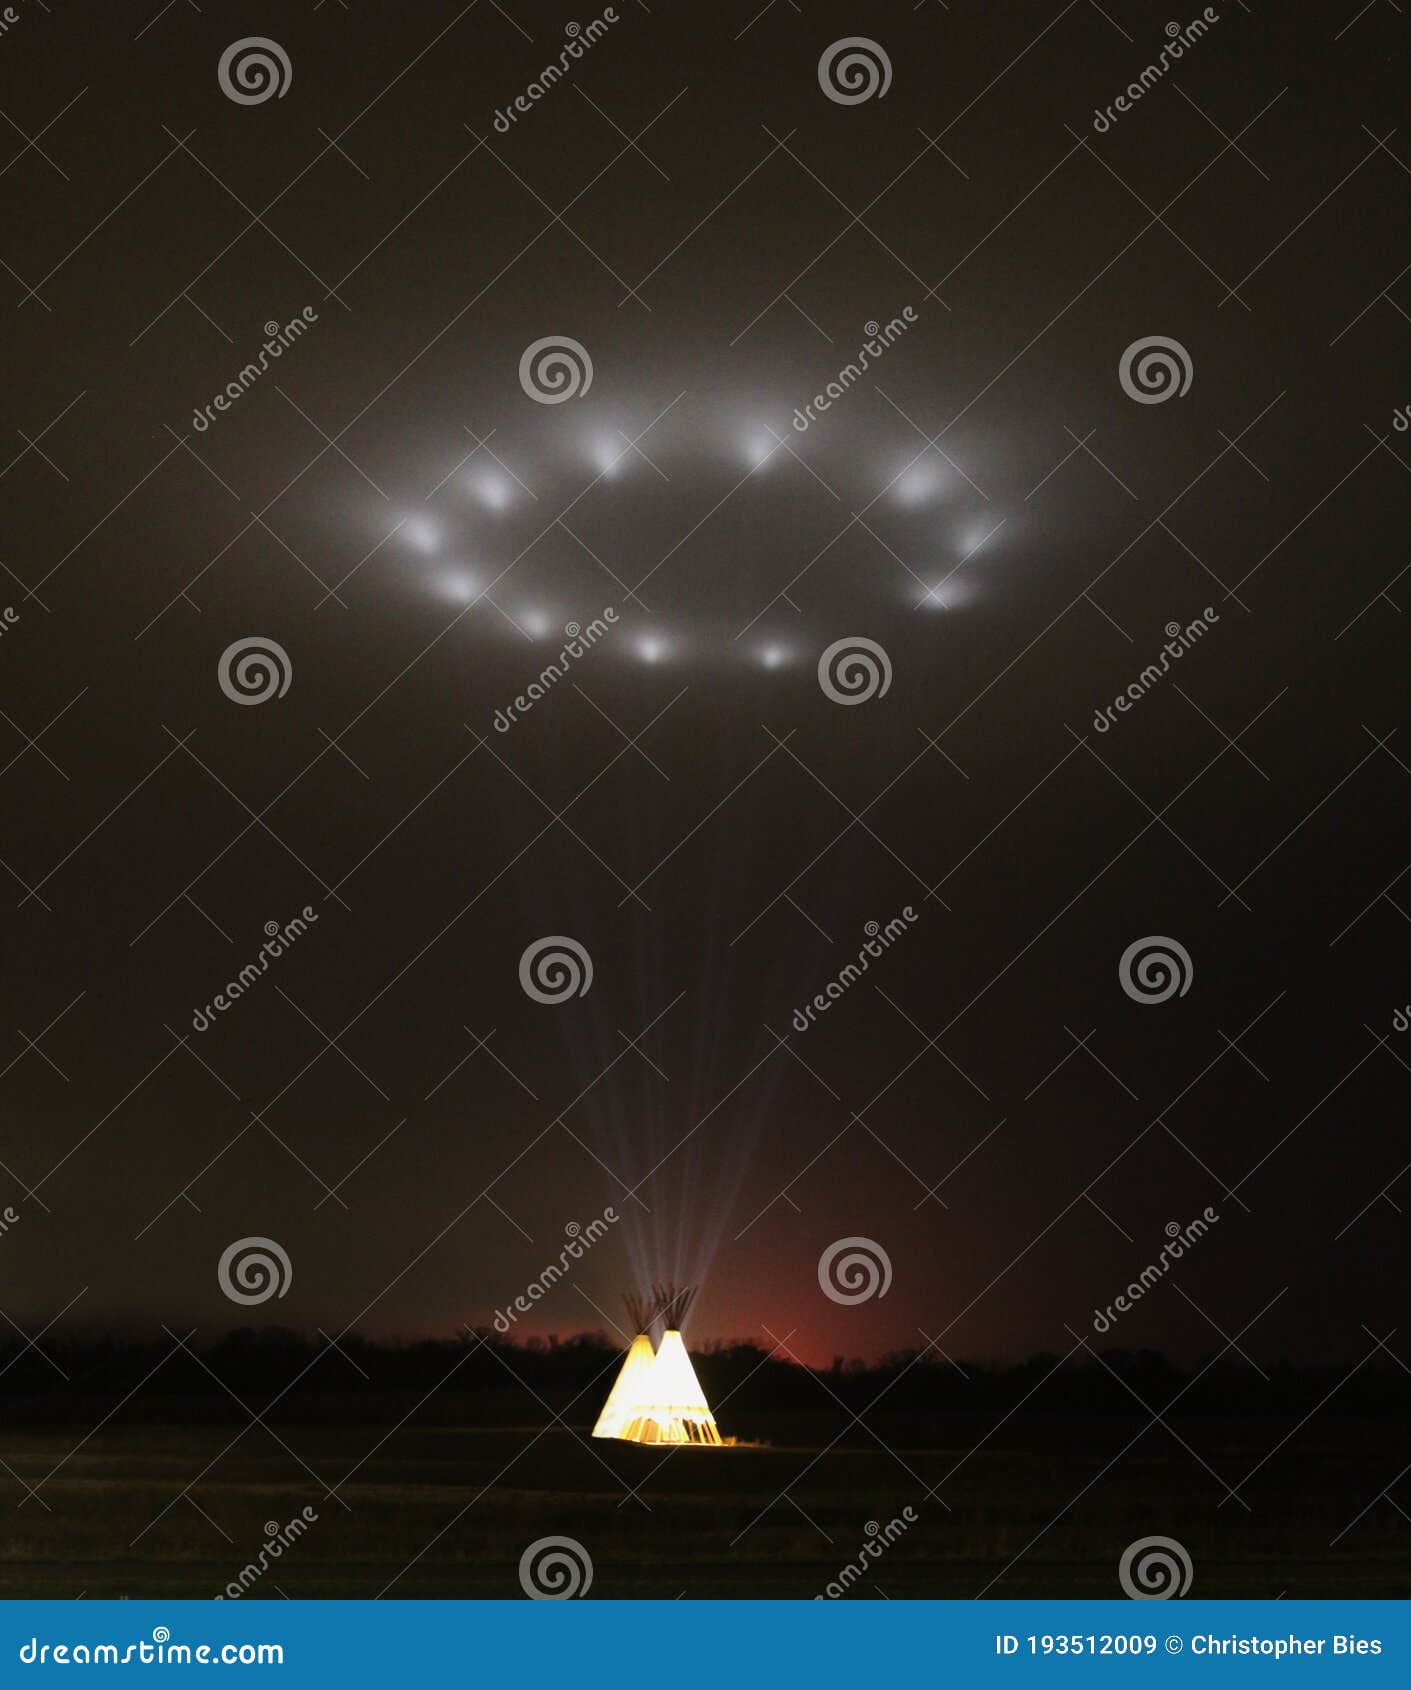 illuminated tipi, teepee, at night projecting light into the sky